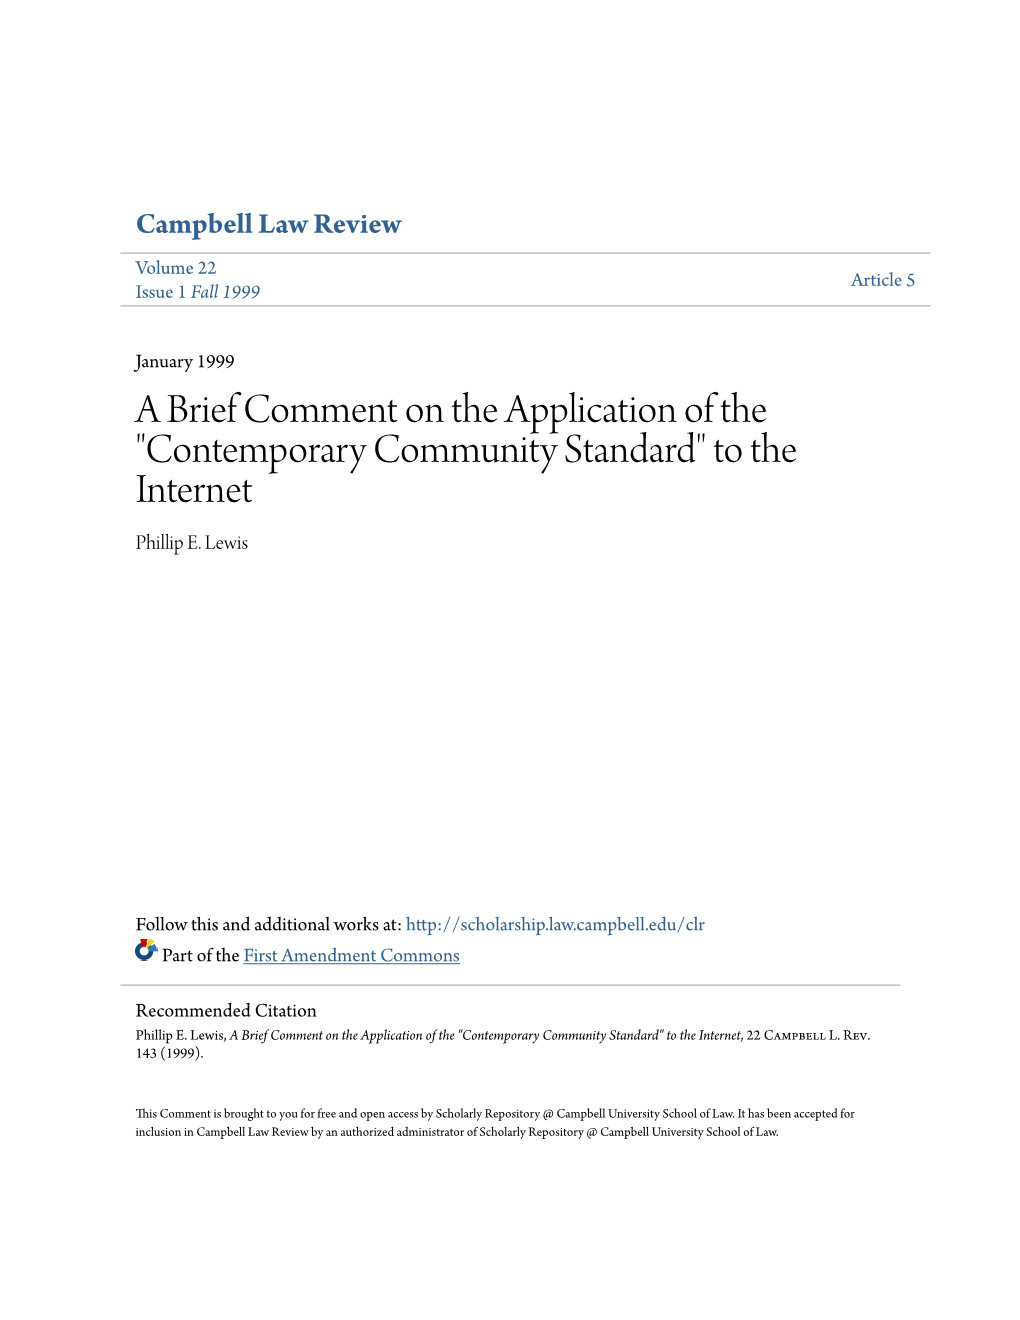 Contemporary Community Standard" to the Internet Phillip E